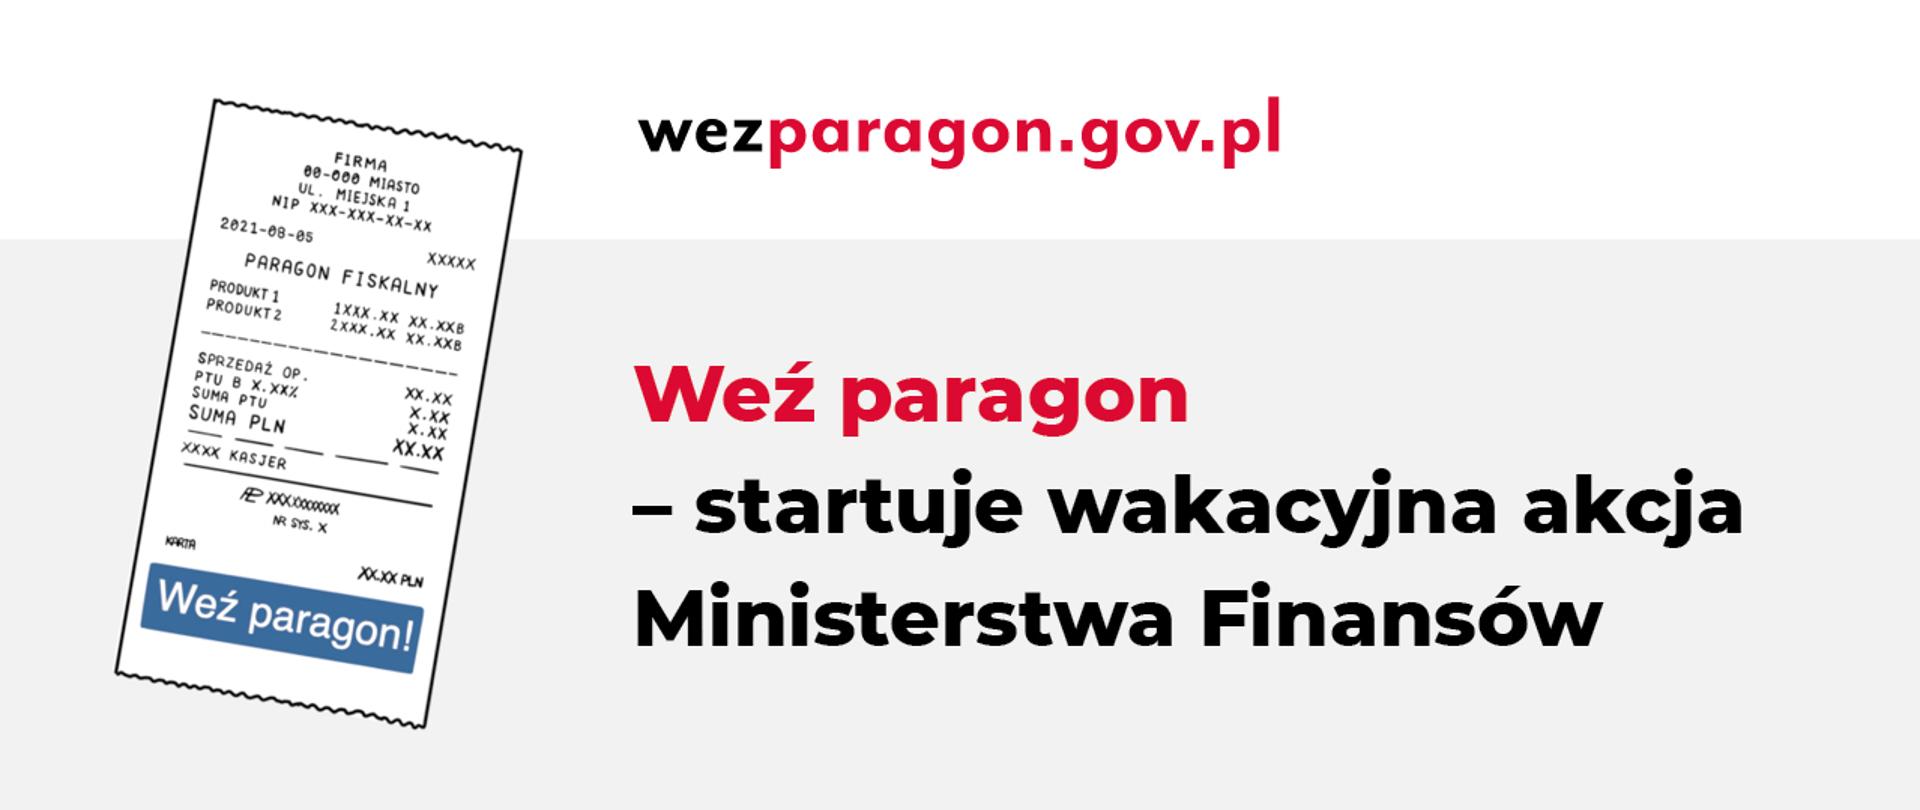 Paragon, adres strony wezparagon.gov.pl. Napis Weź paragon - startuje wakacyjna akcja Ministerstwa Finansów.